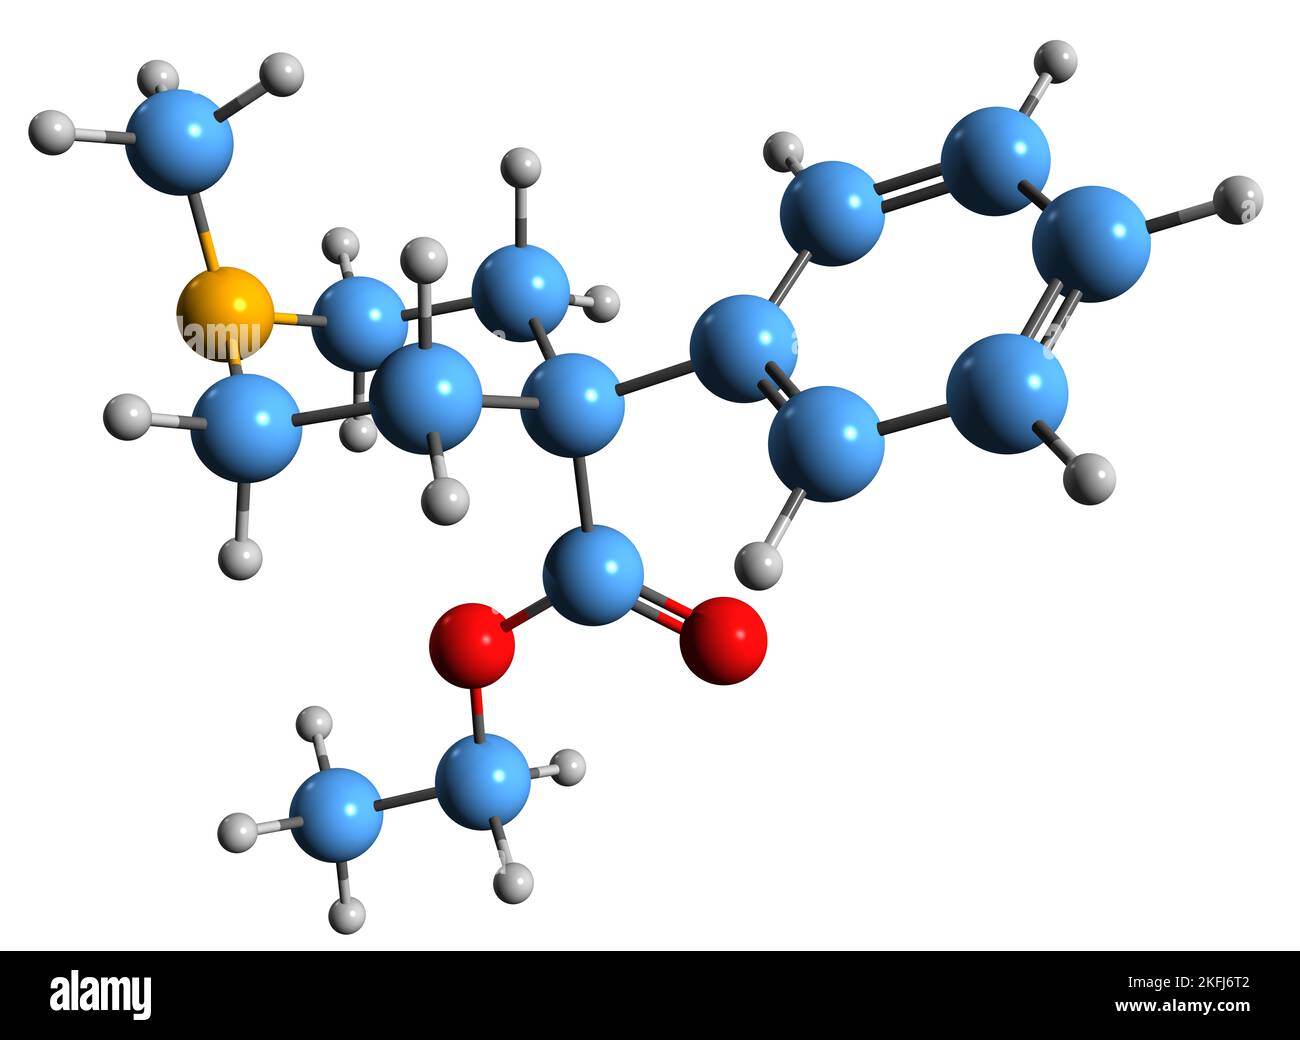 3D Bild der Skelettformel von Pethidin - molekulare chemische Struktur des Opioid-Schmerzmittels Meperidin auf weißem Hintergrund isoliert Stockfoto